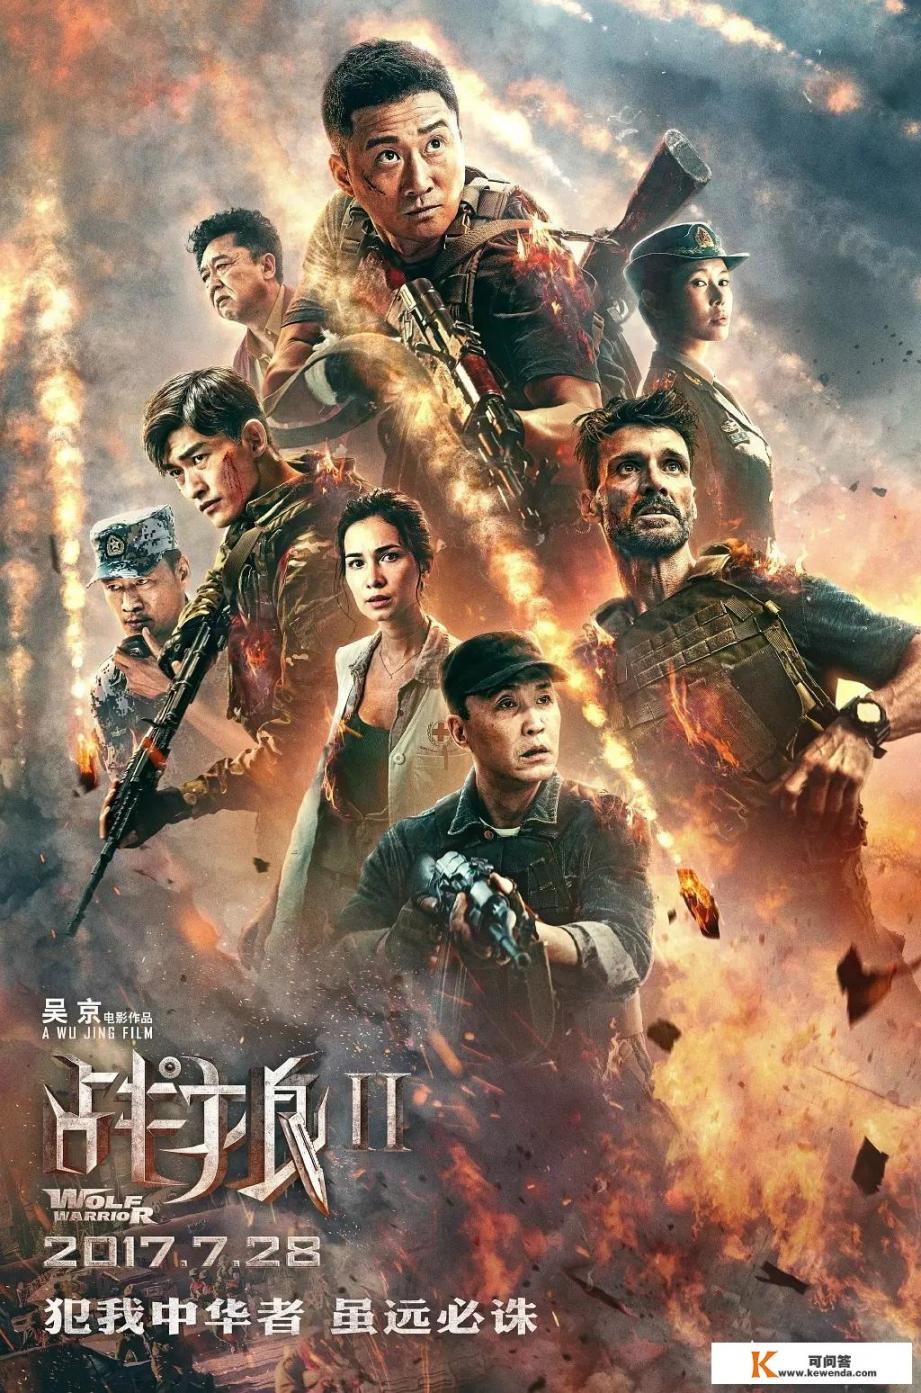 如果《战狼3》由吴京、赵文卓、彭于晏、张译等主演，你认为票房能达到多少？